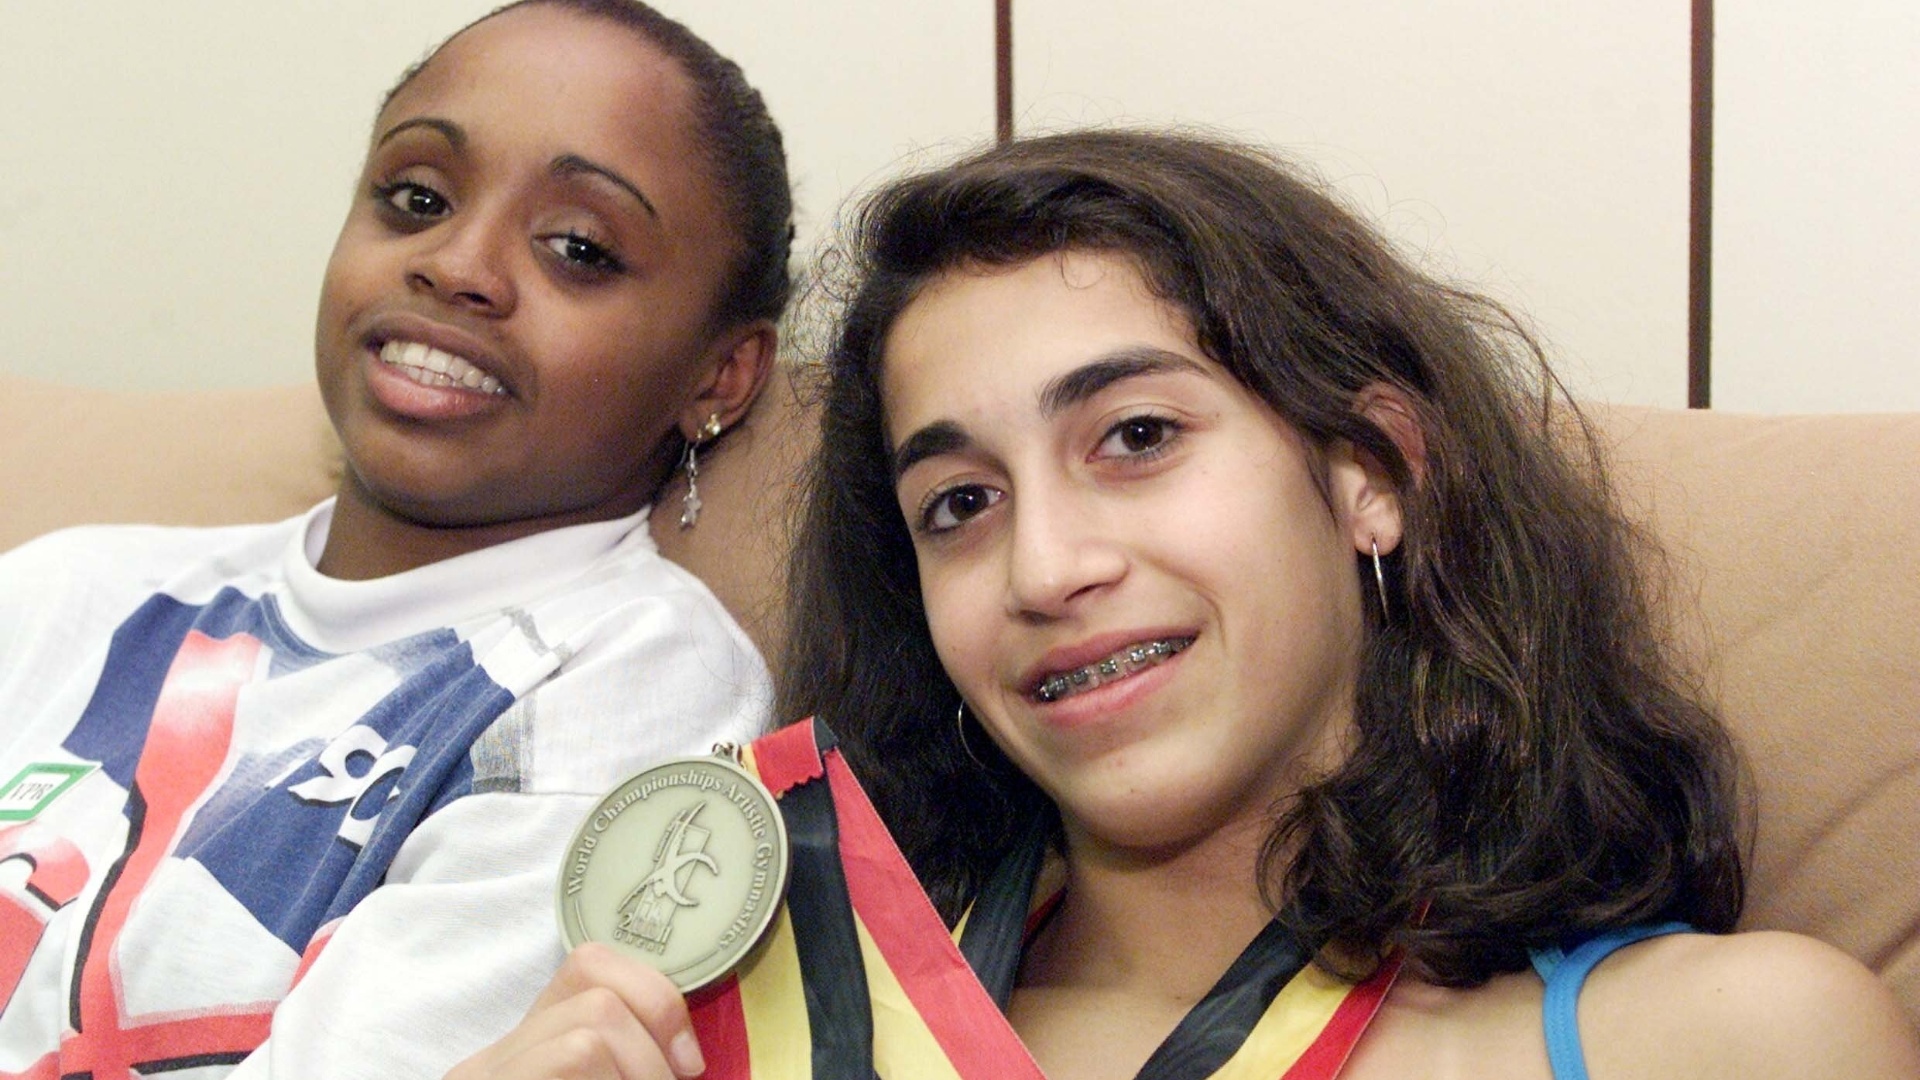 Ao lado de Daiane dos Santos, Daniele Hypolito mostra a medalha de ouro conquistada por ela no Mundial de ginástica de 2001